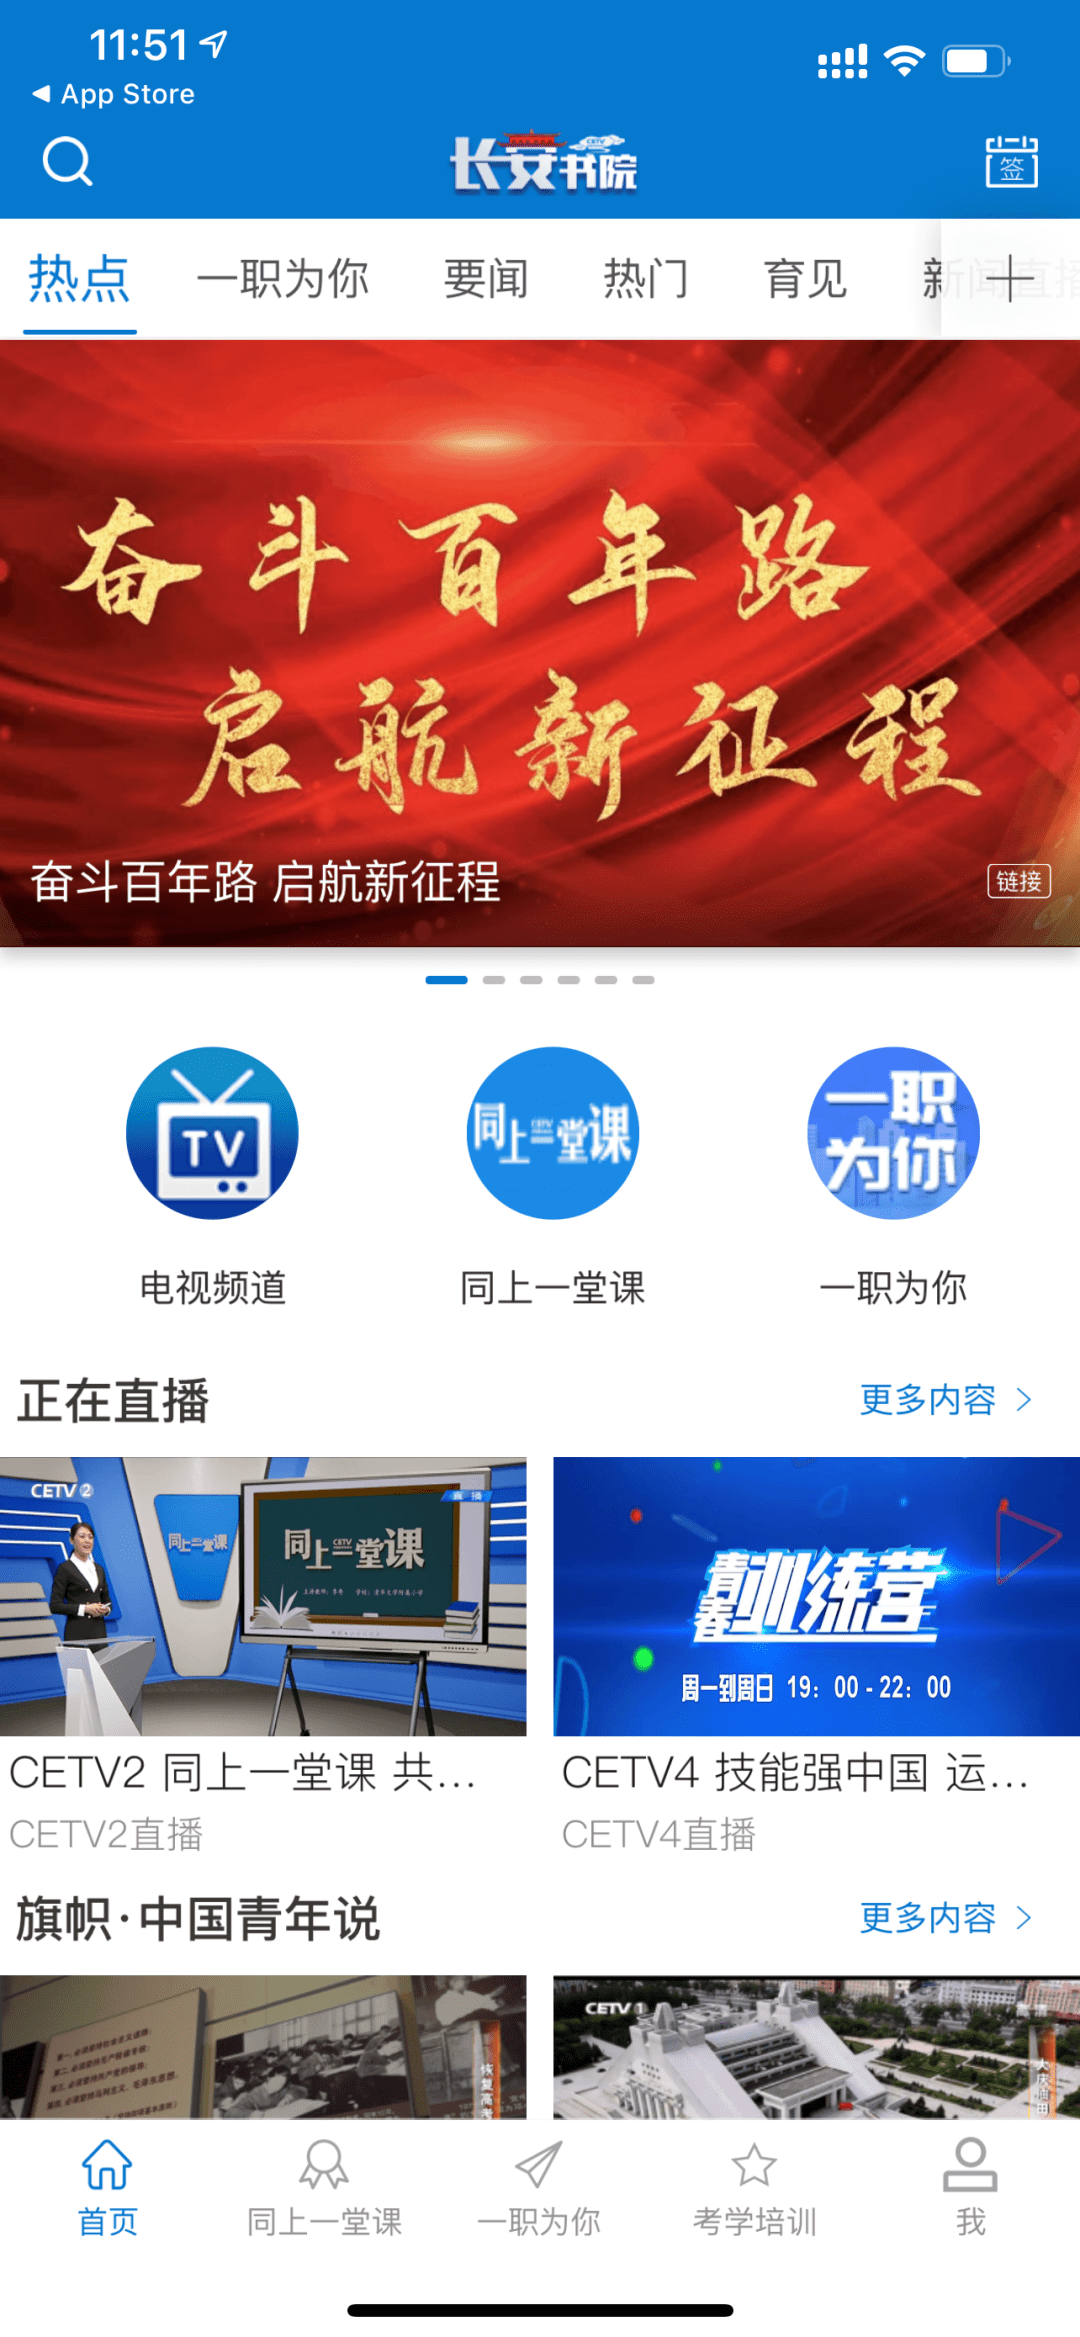 上海教育电视台频道在线直播，上海教育电视台频道在线直播今天吗